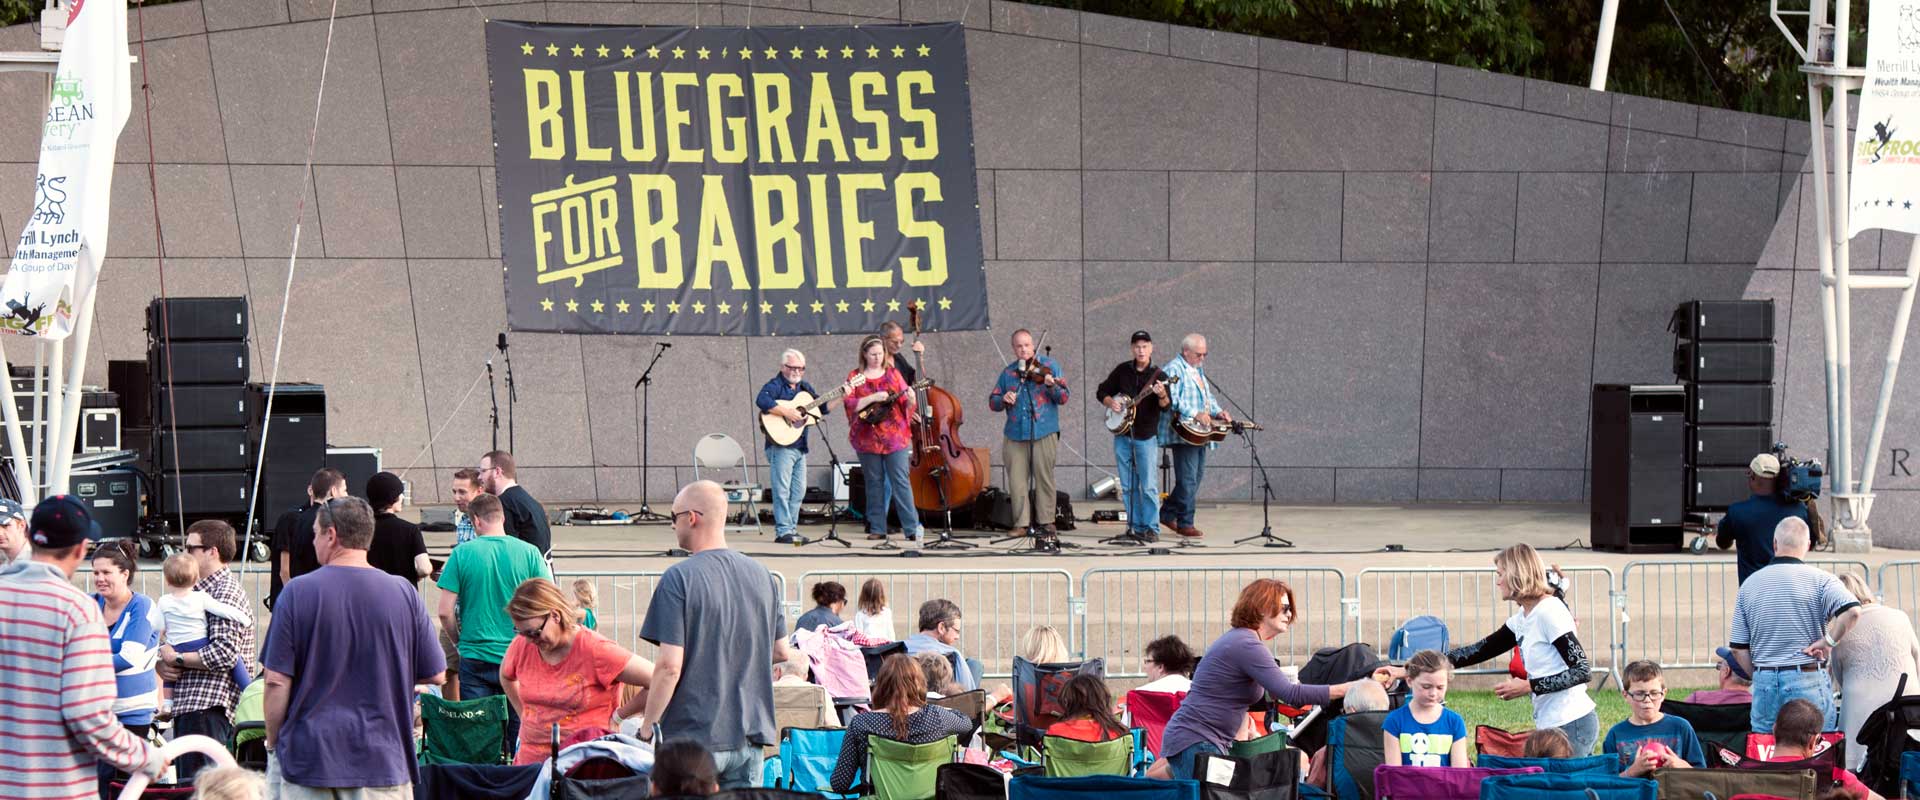 Bluegrass for Babies